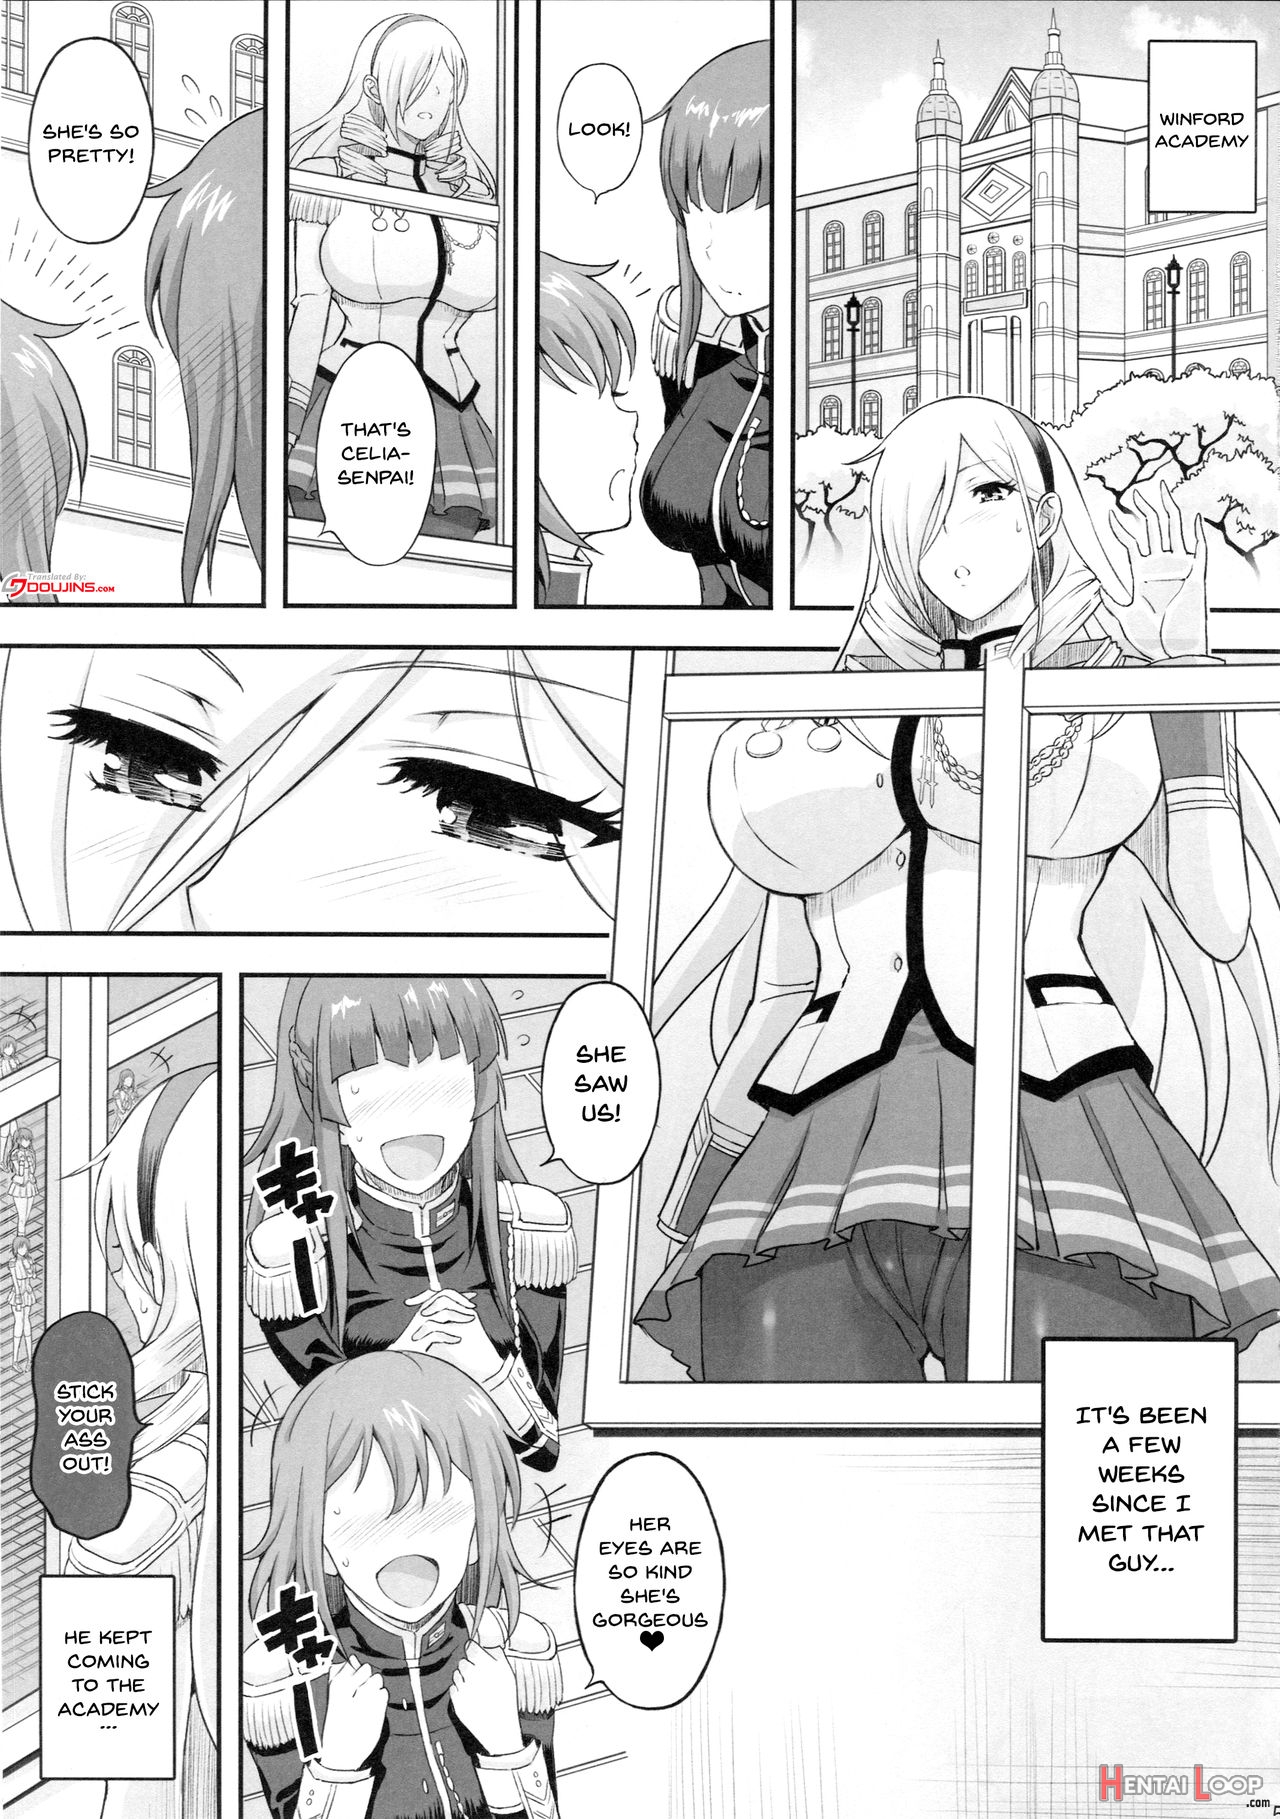 Kouki Naru Onna Kishi-sama 2 page 2